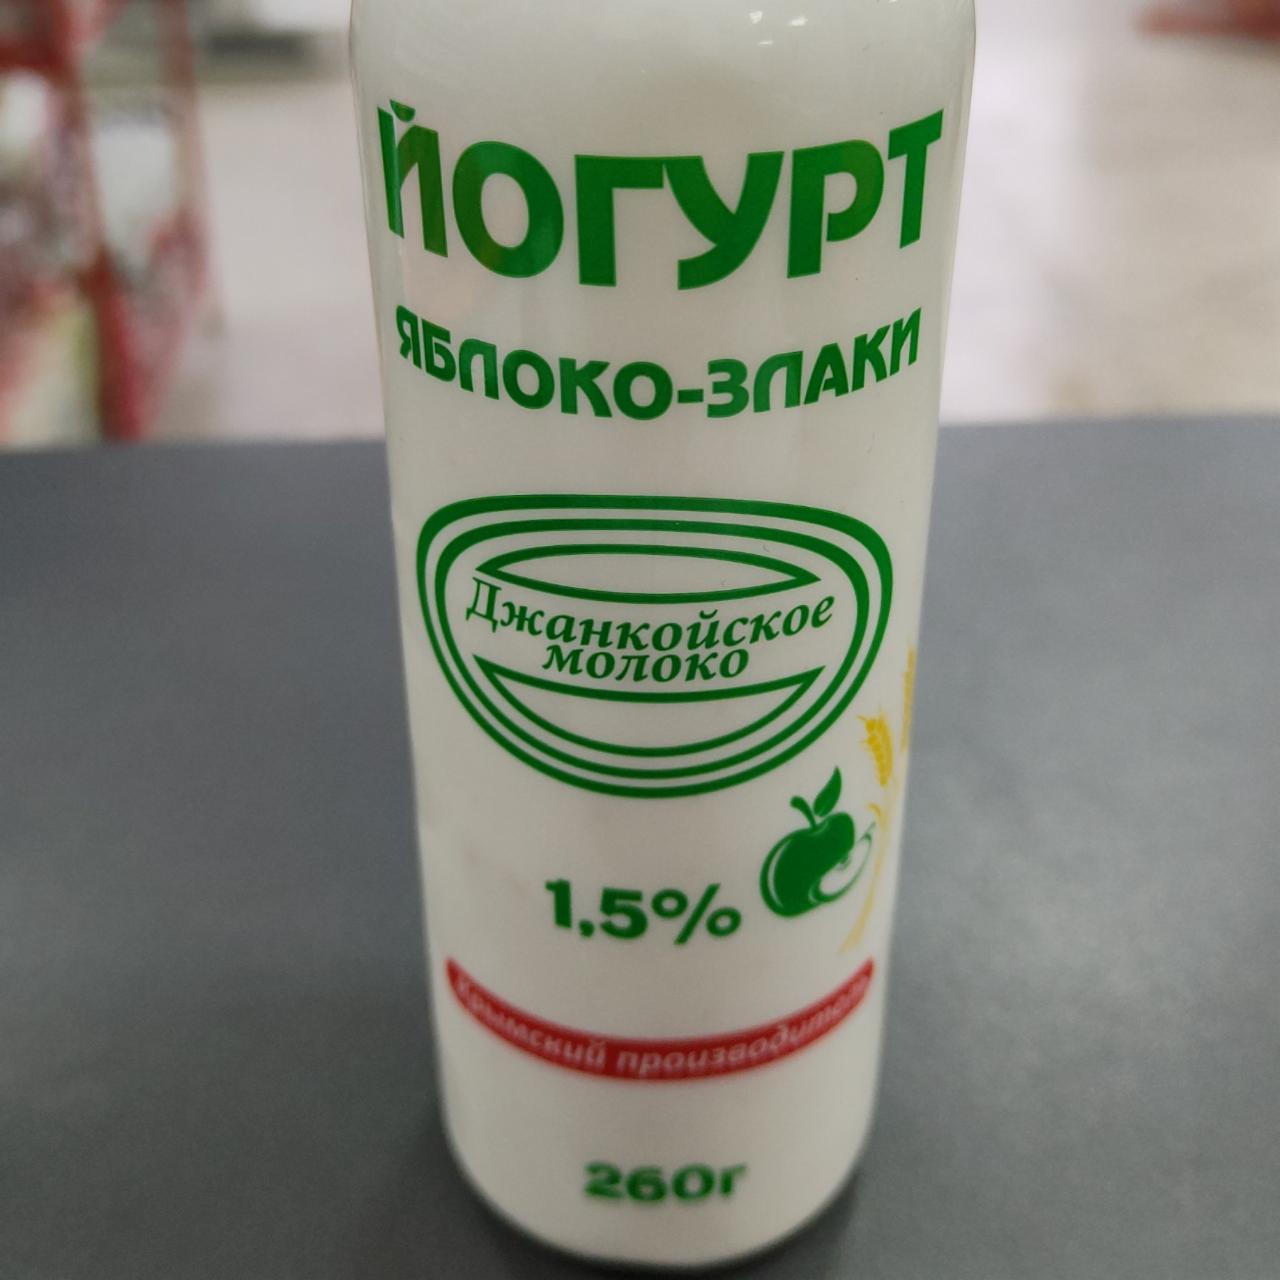 Фото - Йогурт Яблоко-Злаки 1.5% Джанкойское молоко